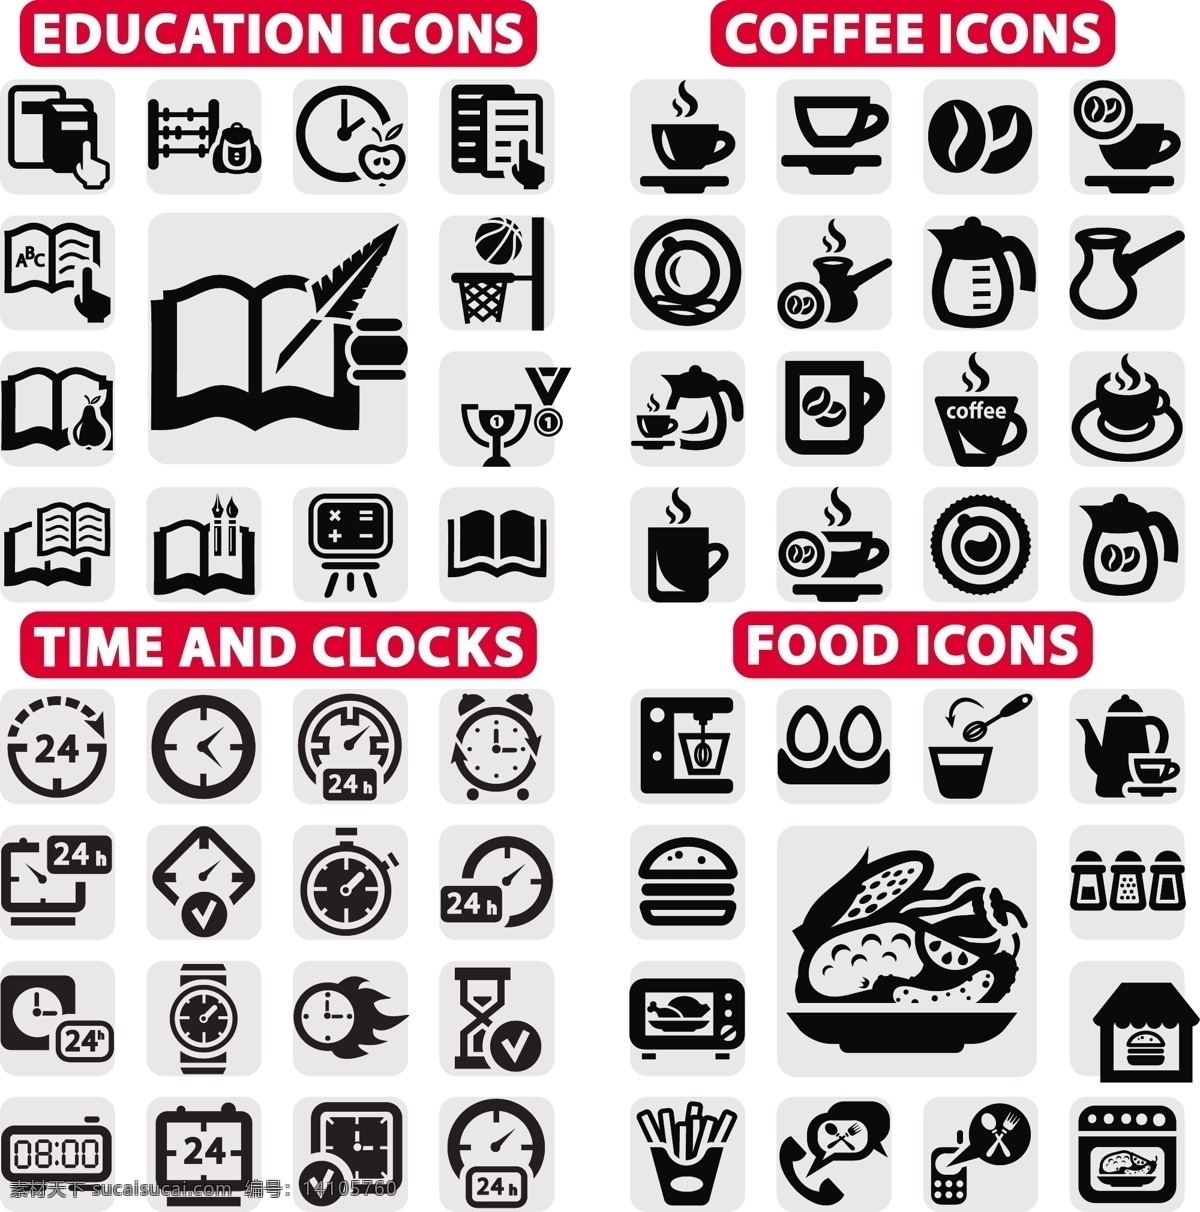 logo 标签 标识标志图标 标志 餐饮图标 教育 咖啡 咖啡图标 美食 学习图标 时间 食物 矢量 图标 小图标 psd源文件